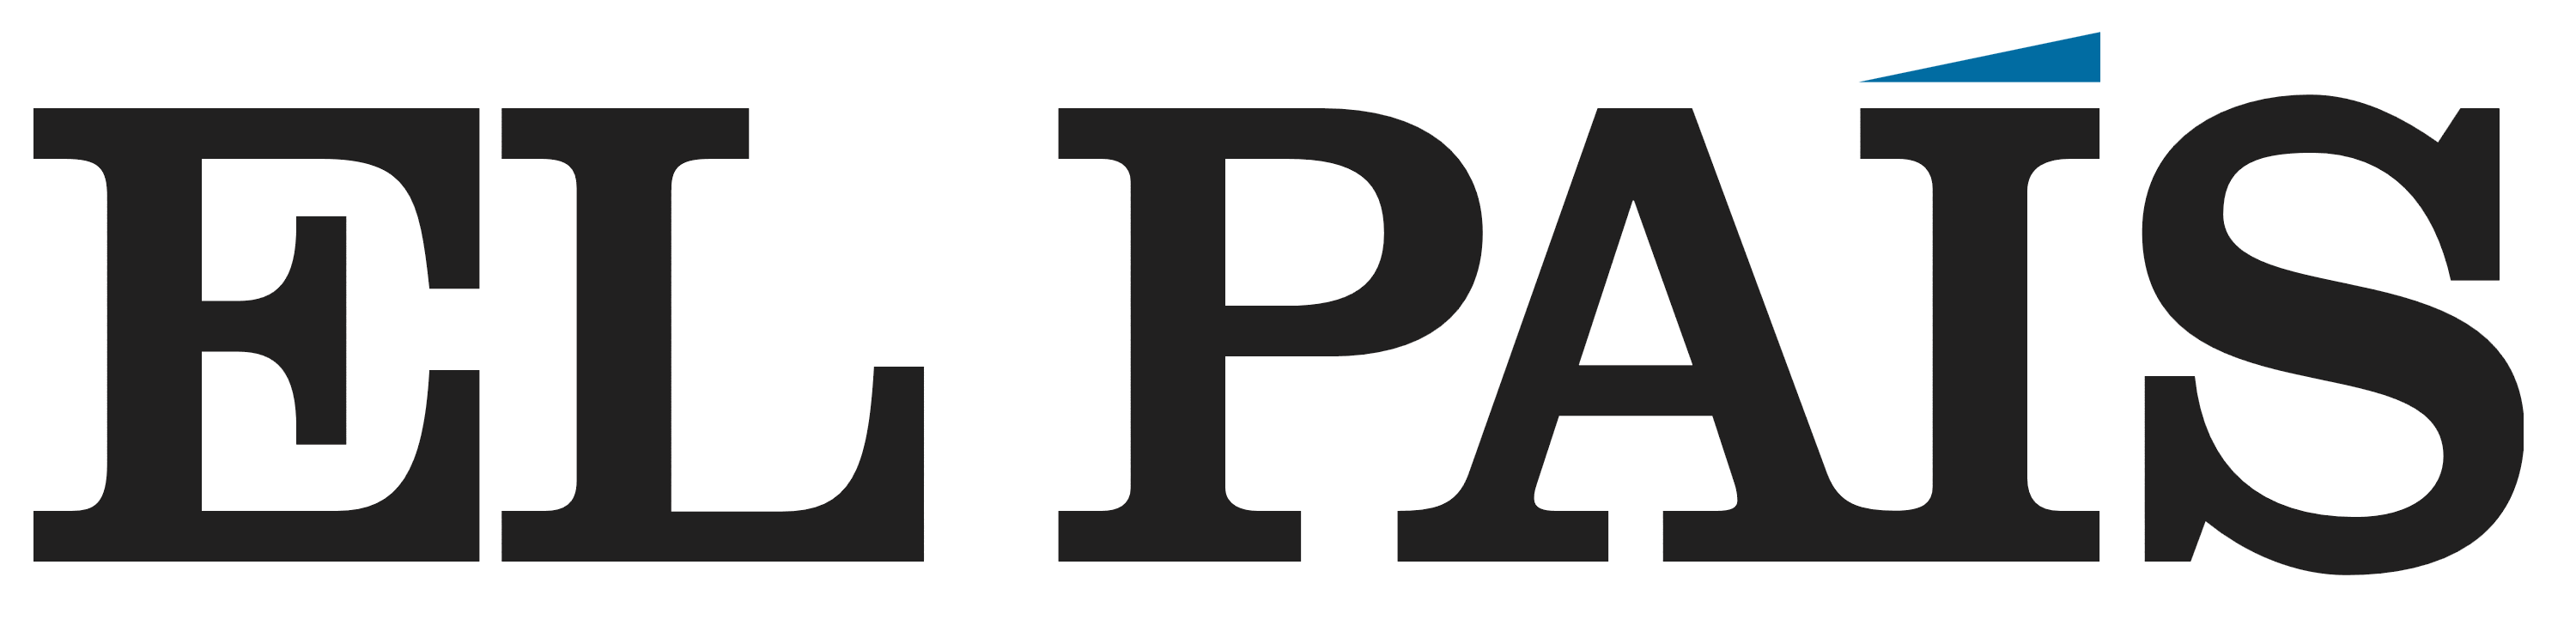 El País logo, logotype